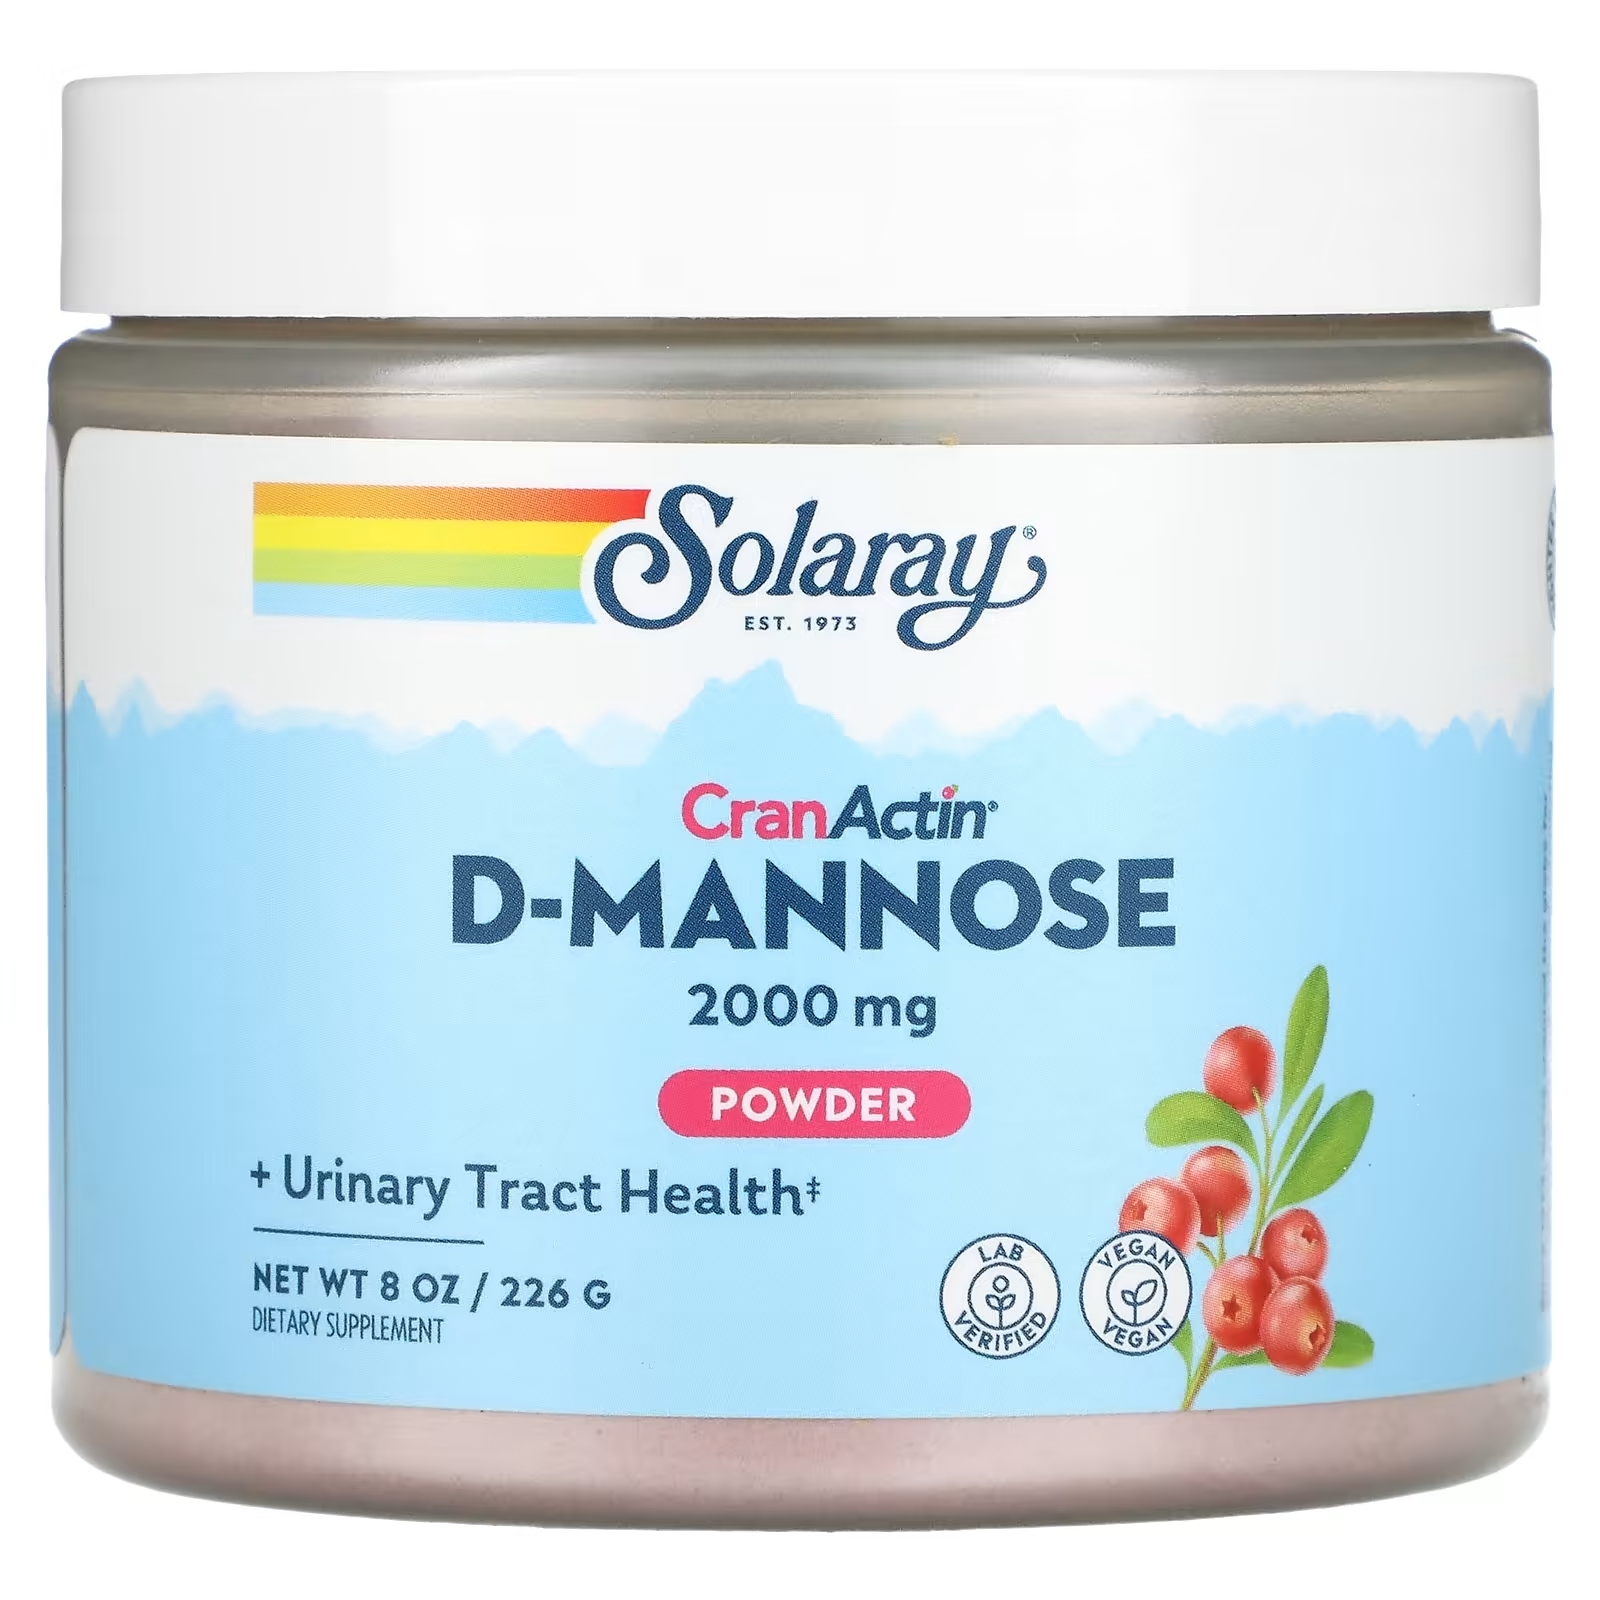 Solaray D-манноза с порошком CranActin 2000 мг, 226 г